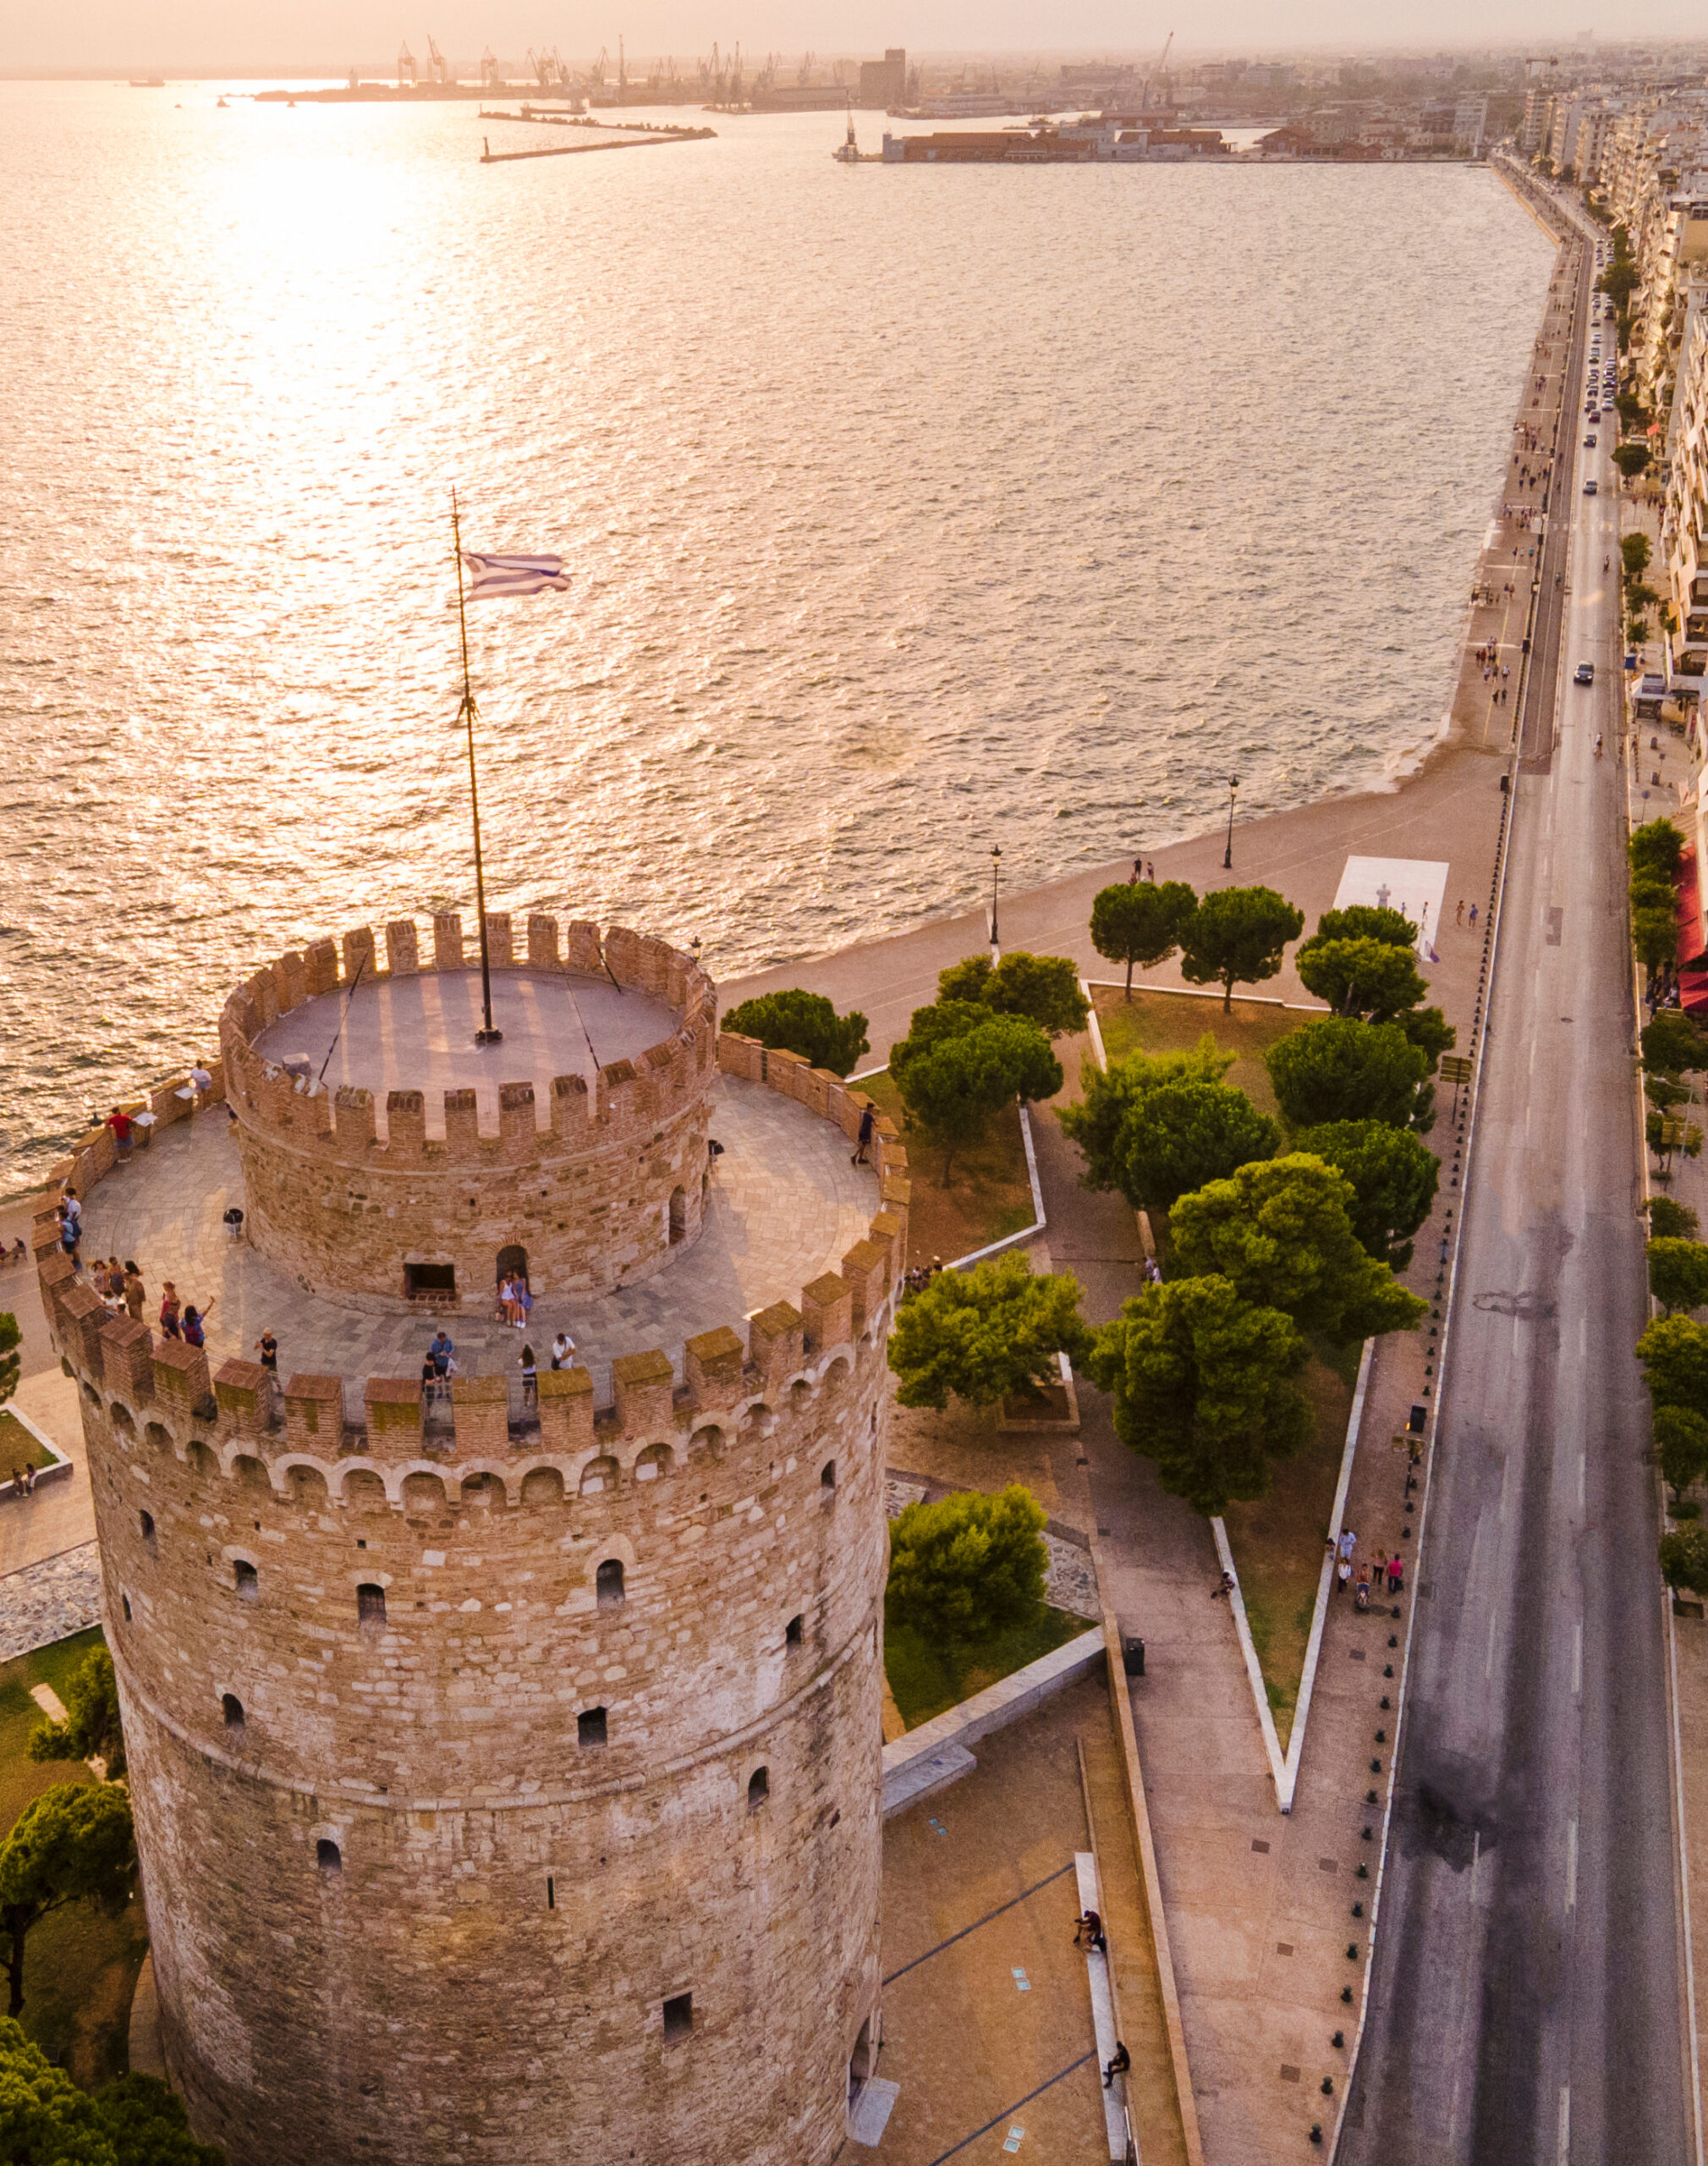 Θεσσαλονίκη: Ευοίωνες προοπτικές για τον τουρισμό
